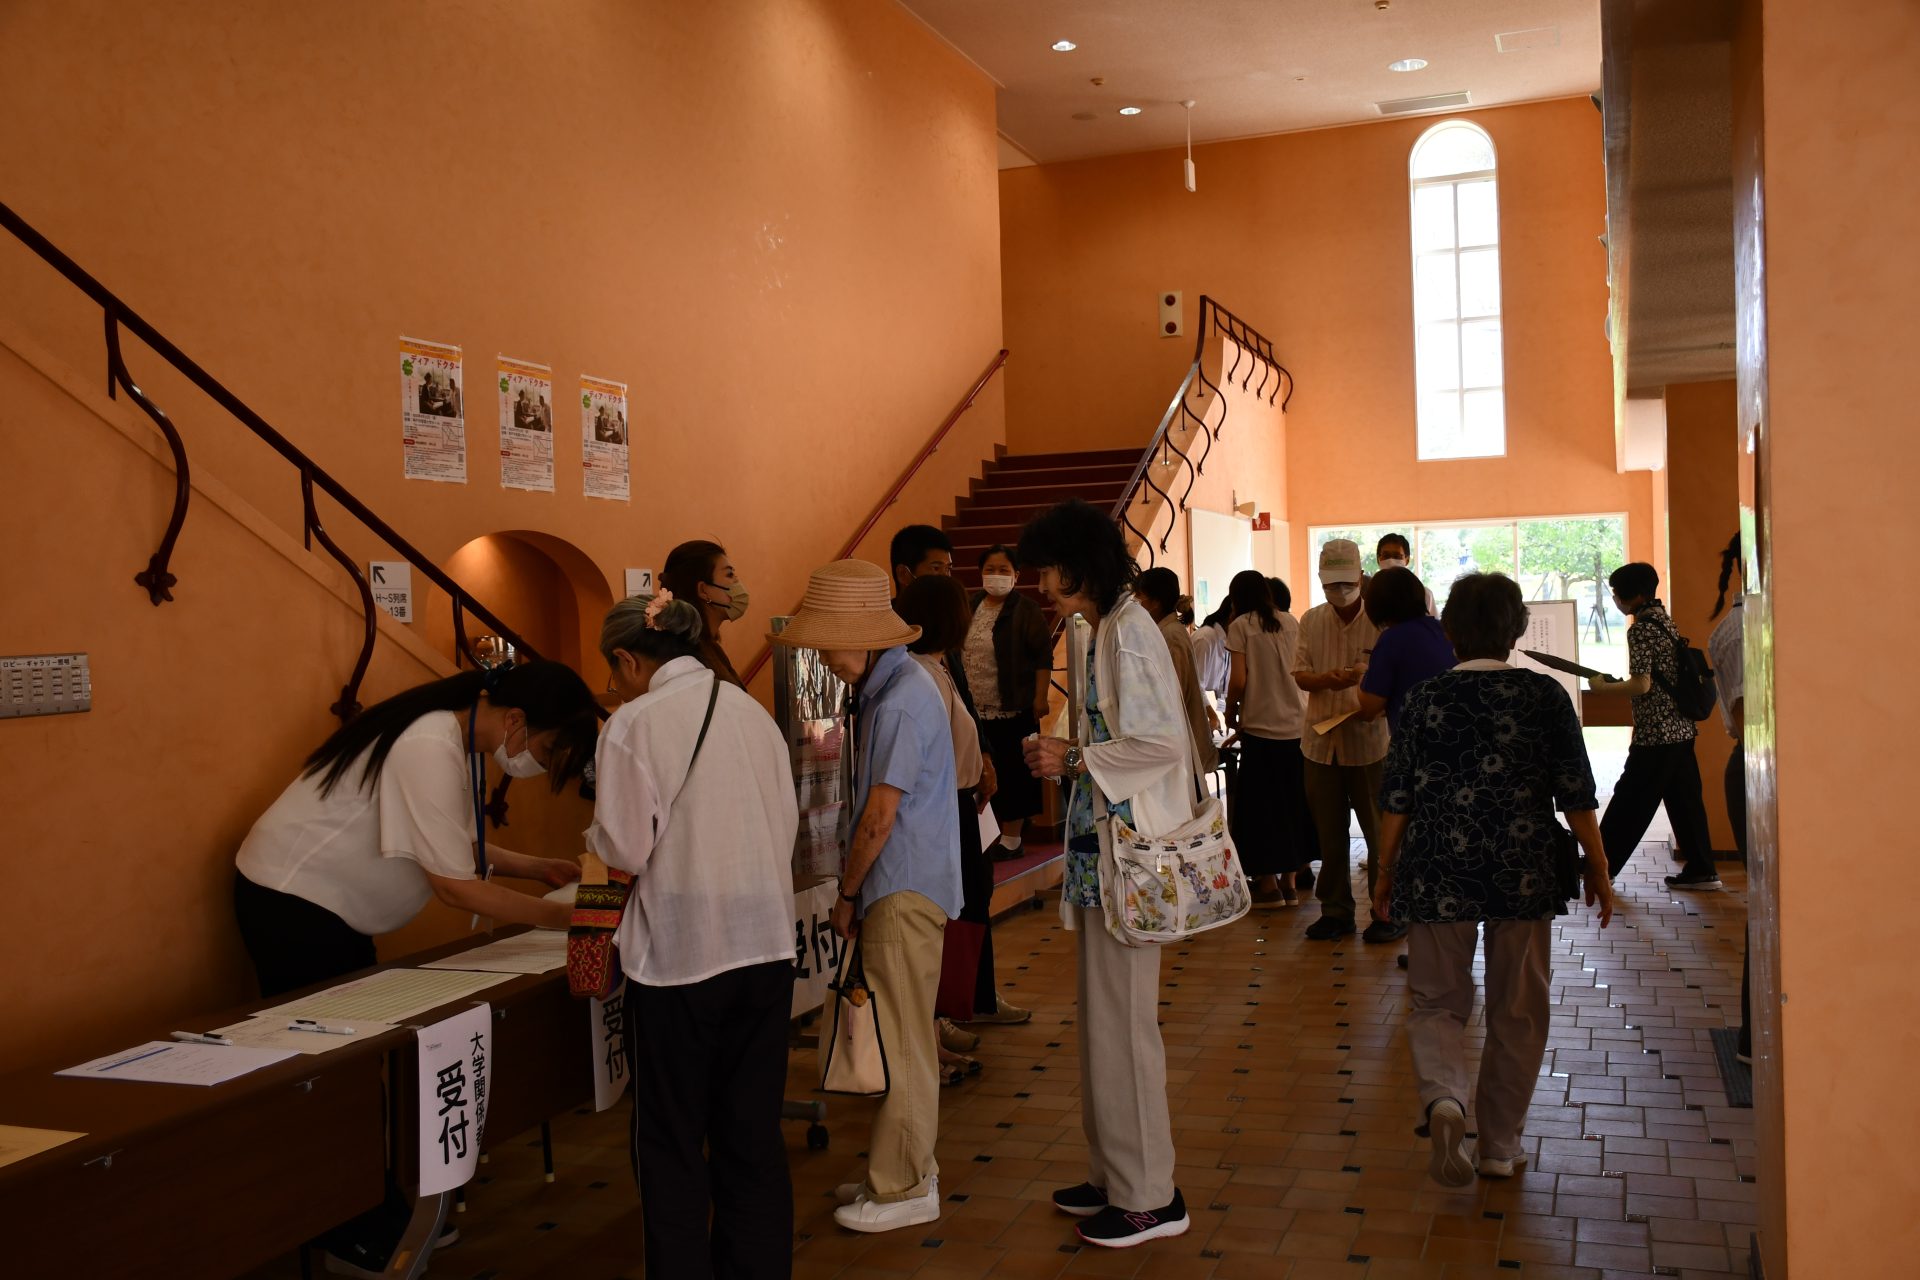 神戸市看護大学　＆　山路ふみ子文化財団　名画特別上映会を開催しました